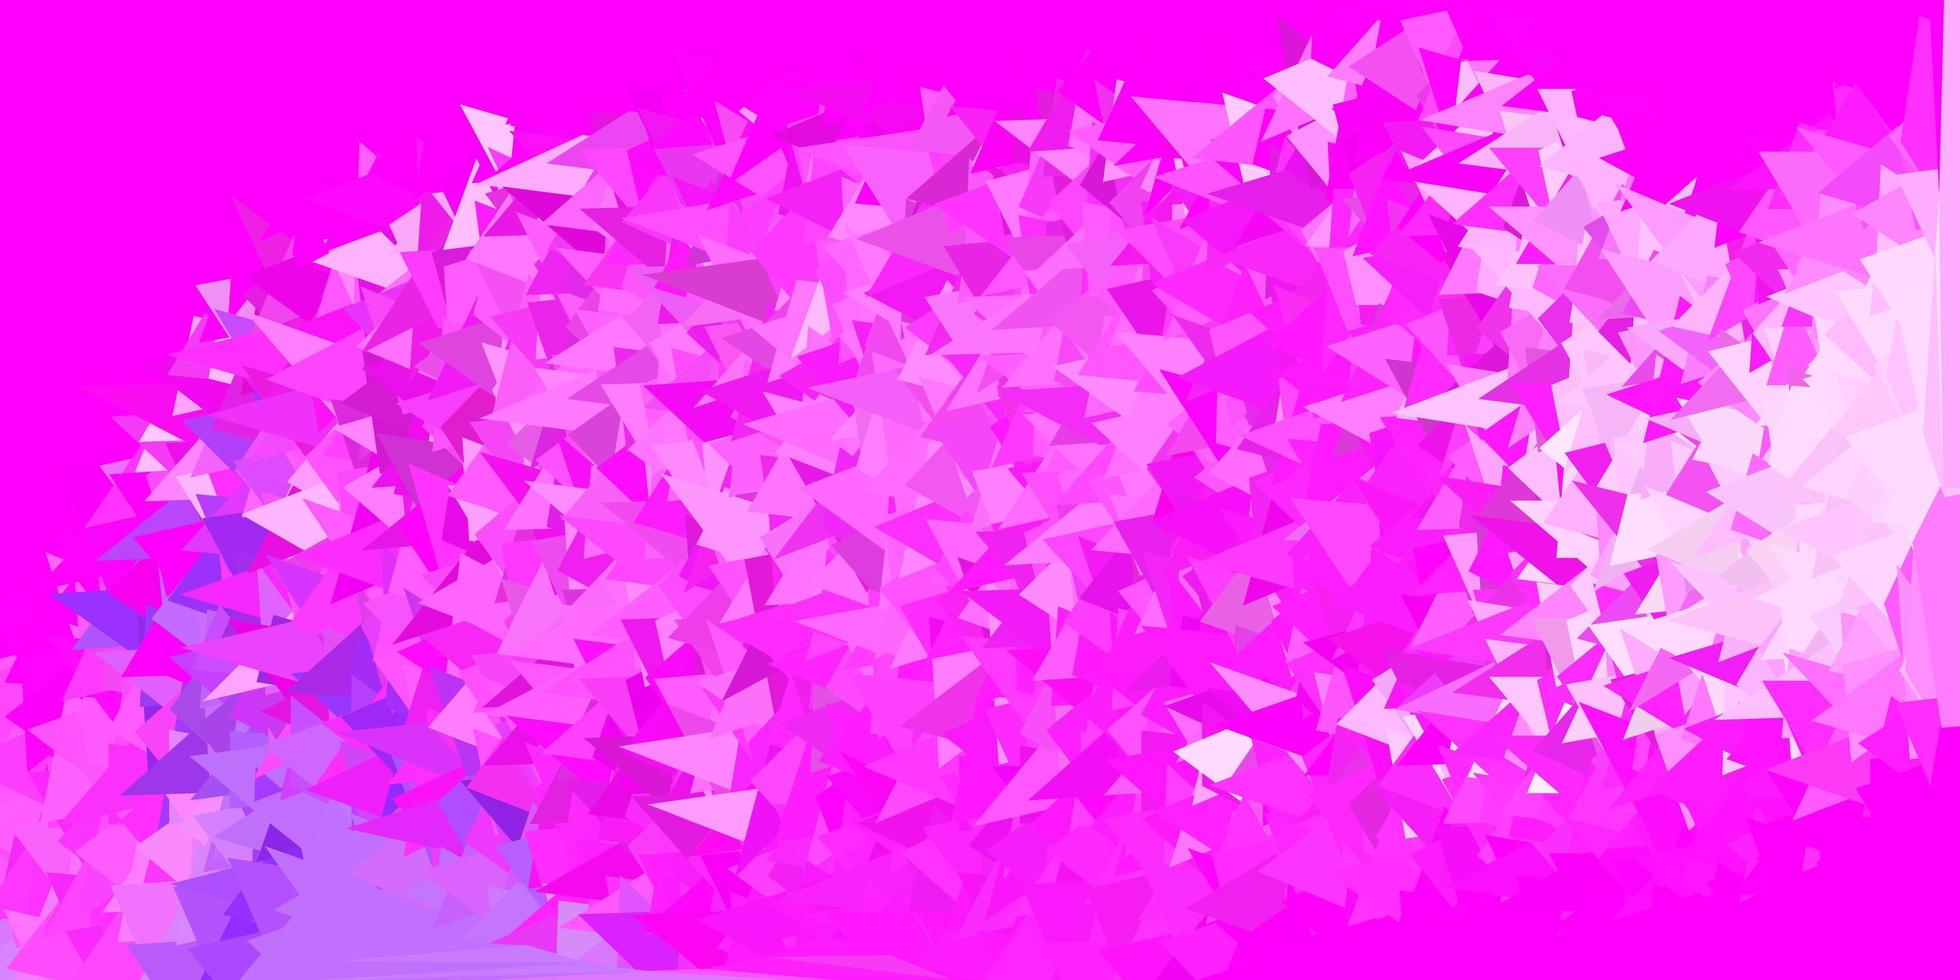 carta da parati geometrica poligonale vettoriale viola chiaro, rosa.